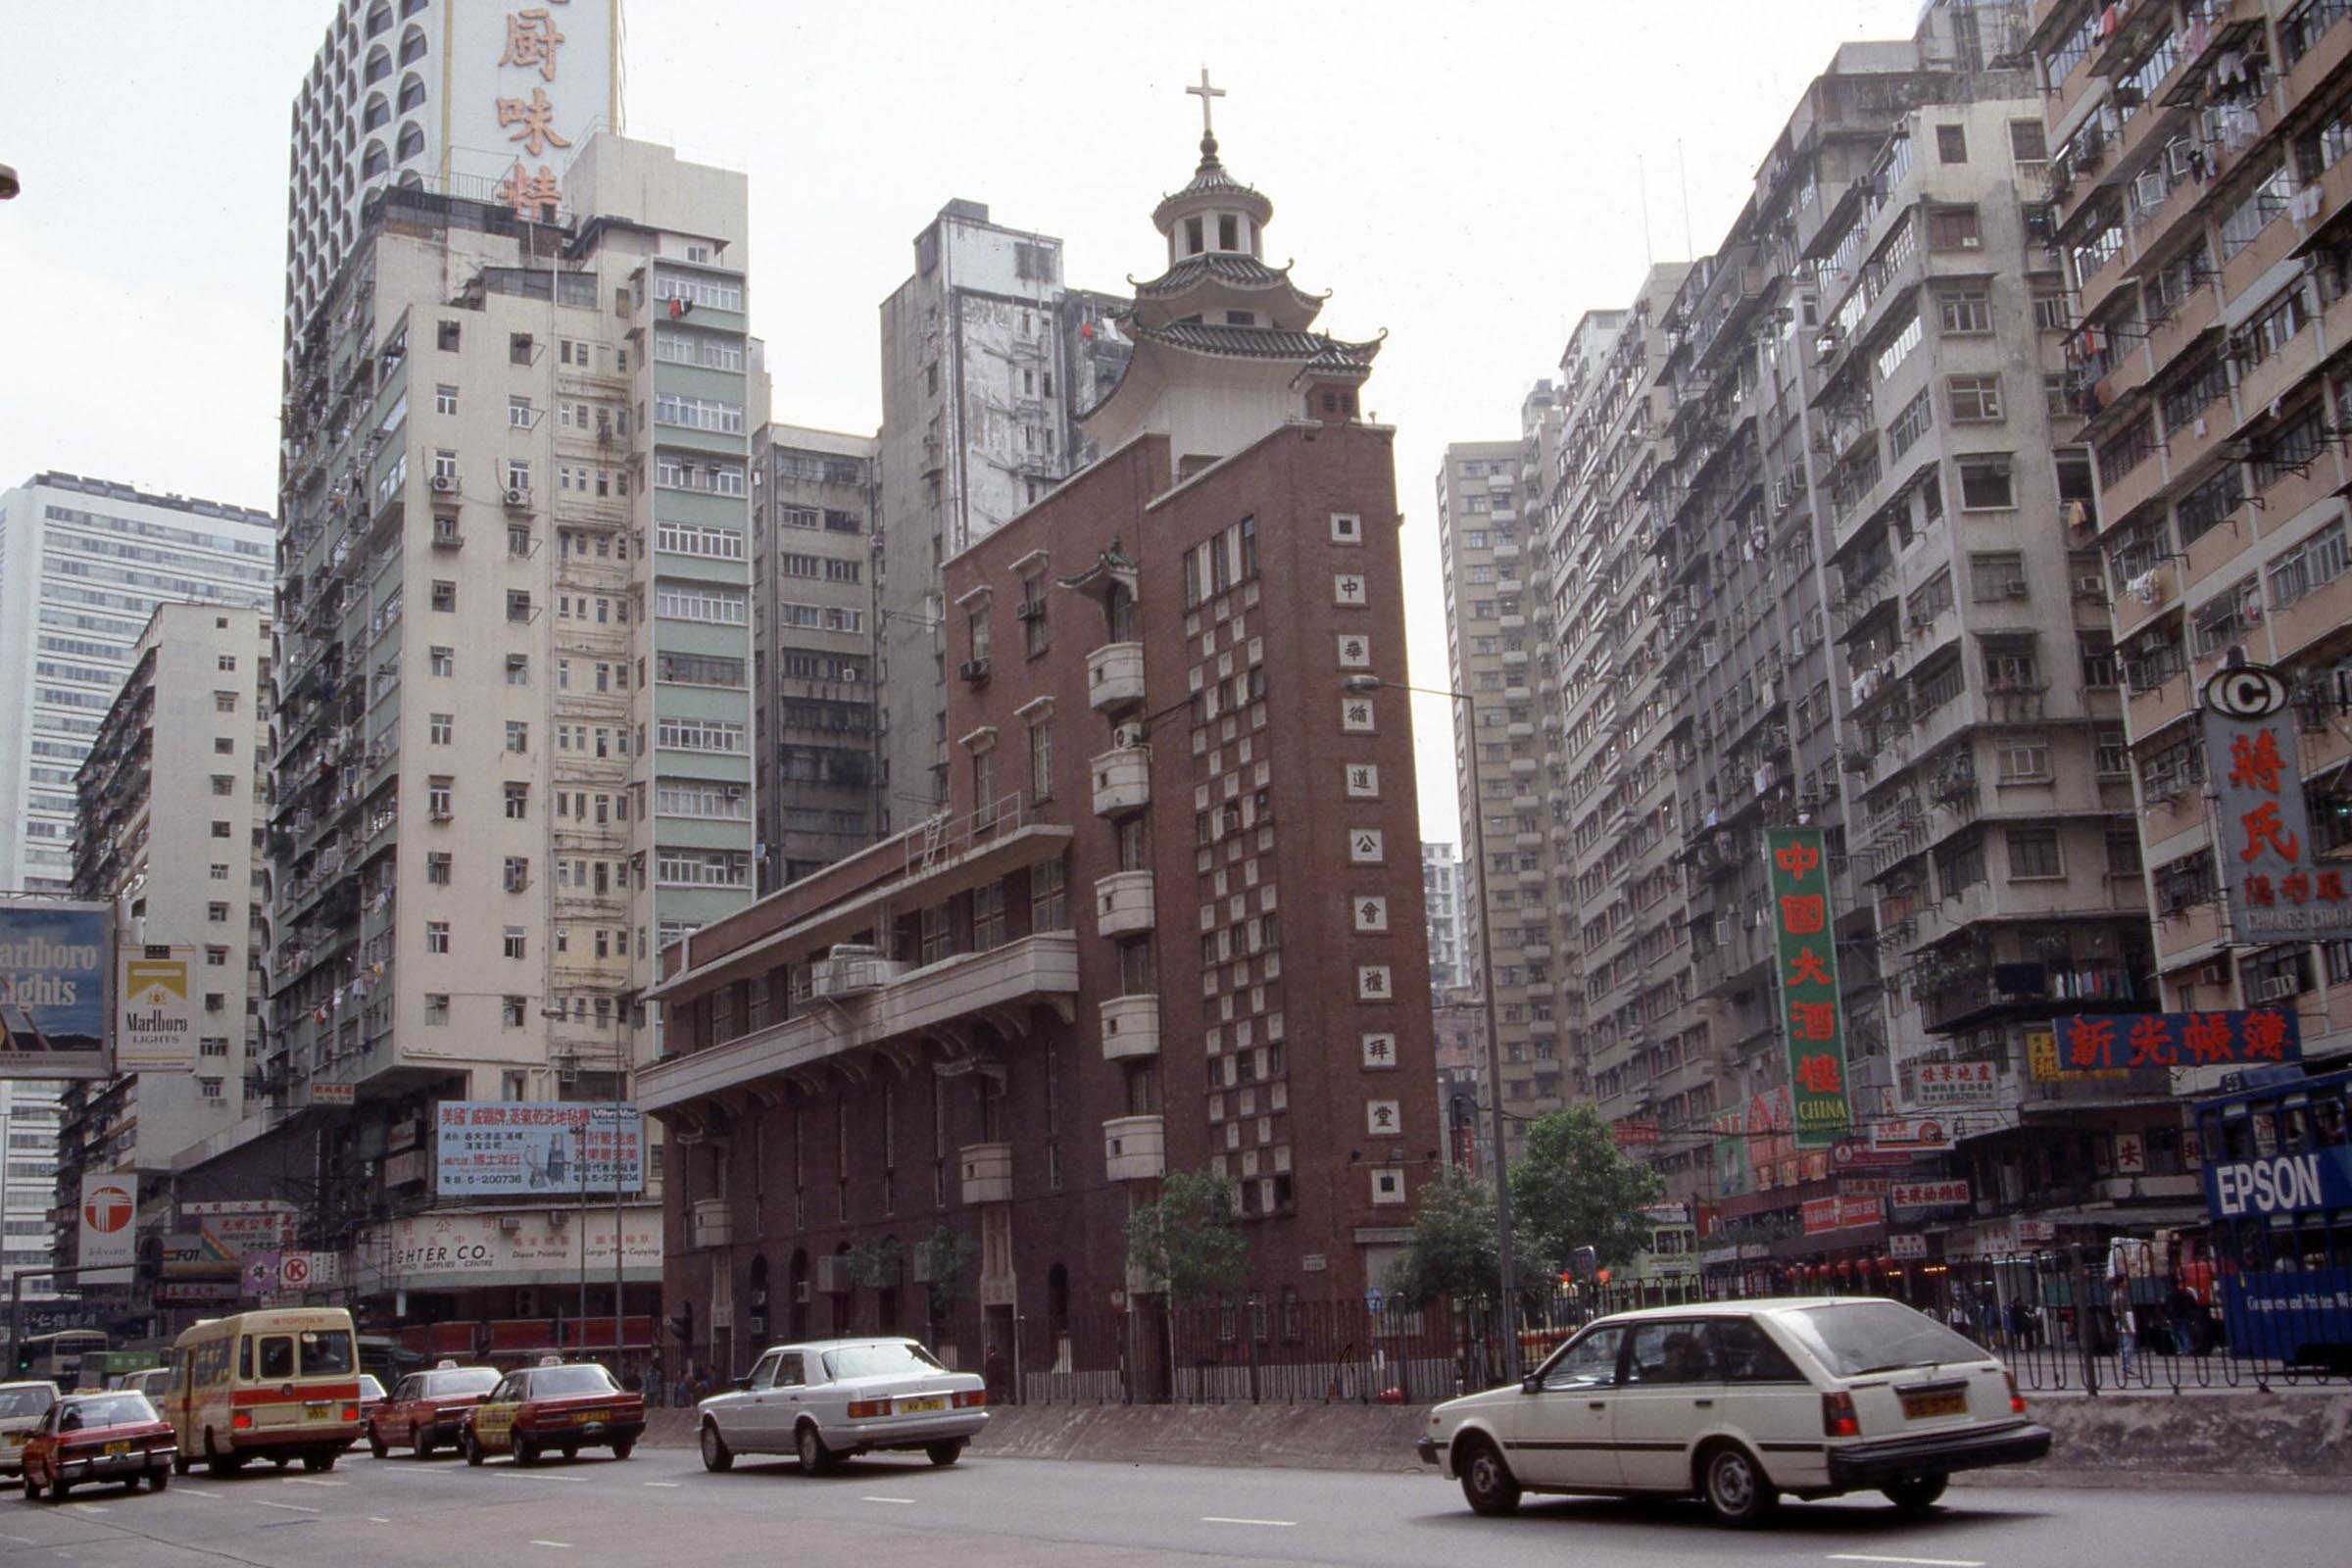 Chinese Methodist Church